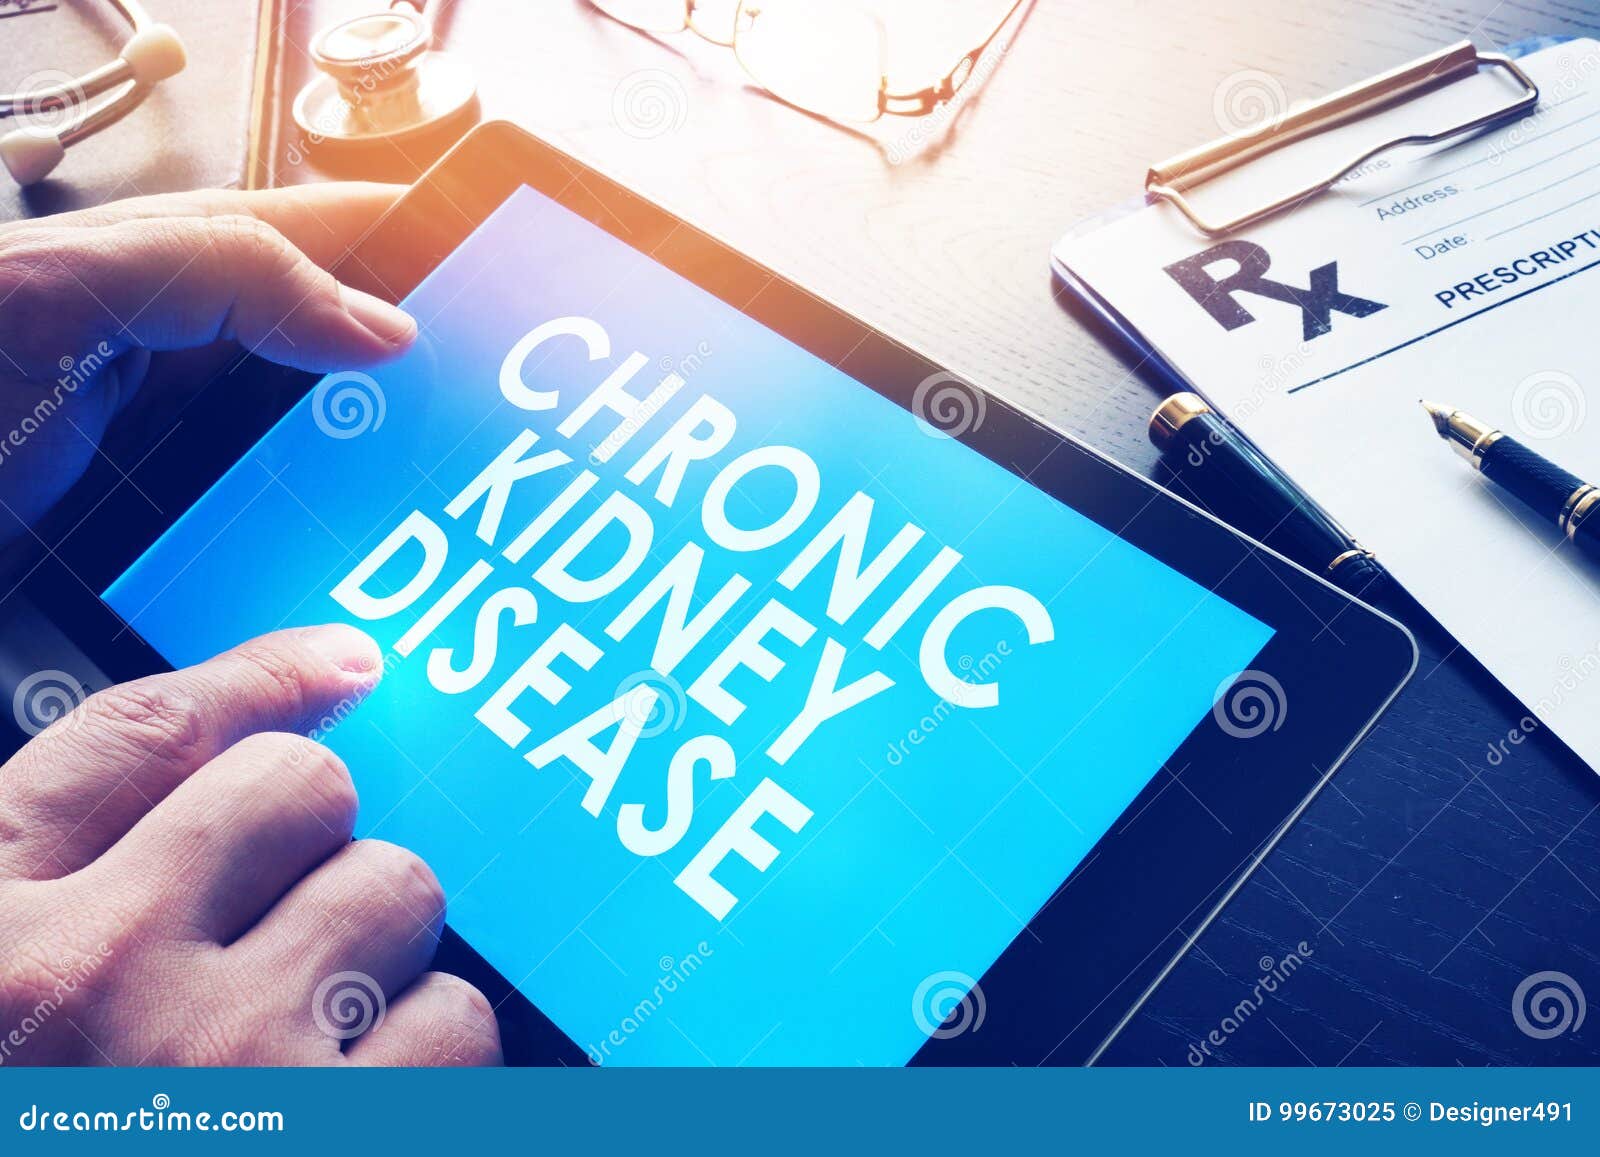 chronic kidney disease ckd.